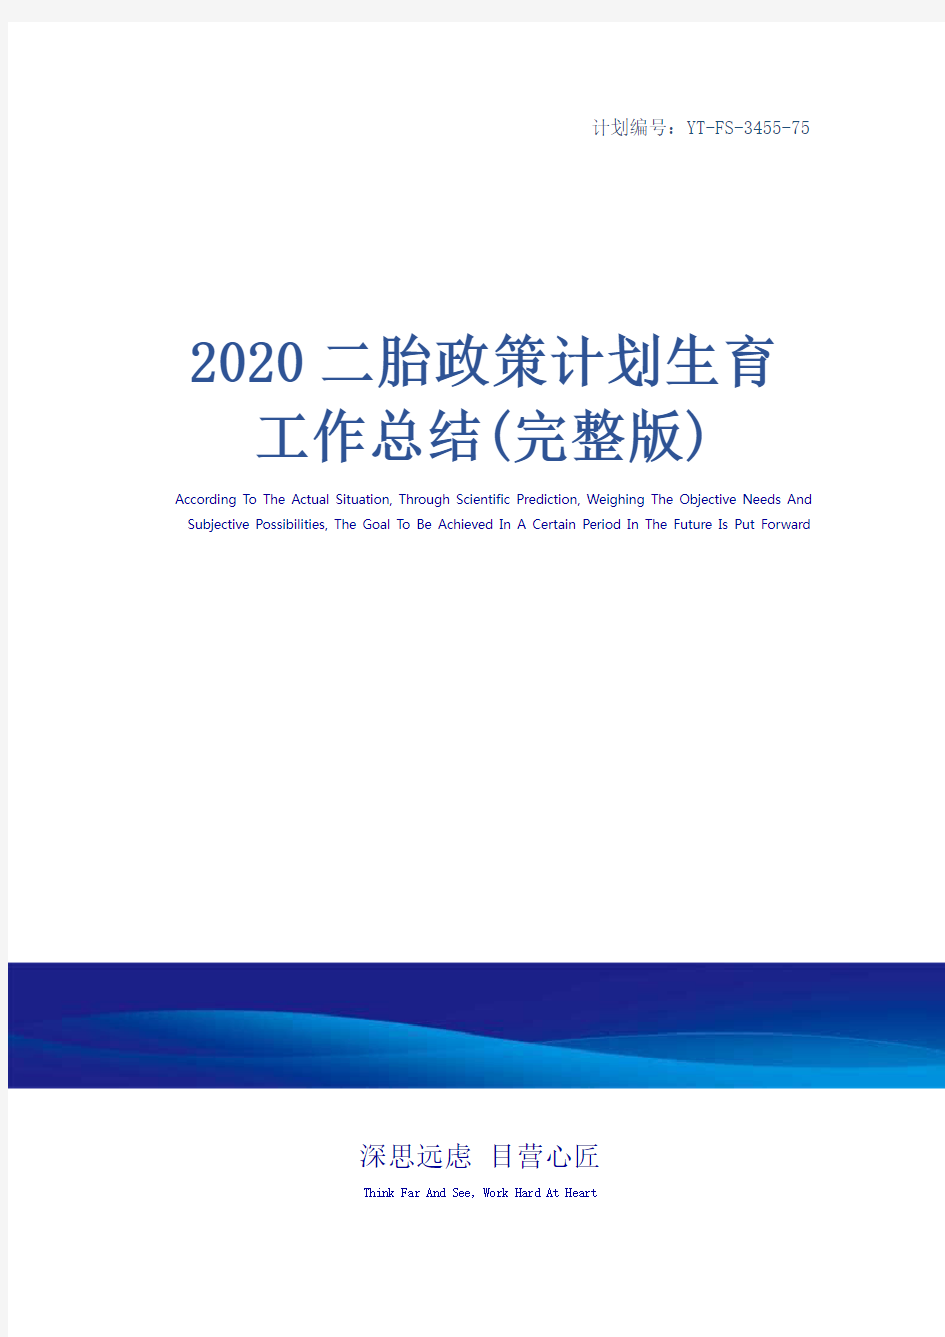 2020二胎政策计划生育工作总结(完整版)